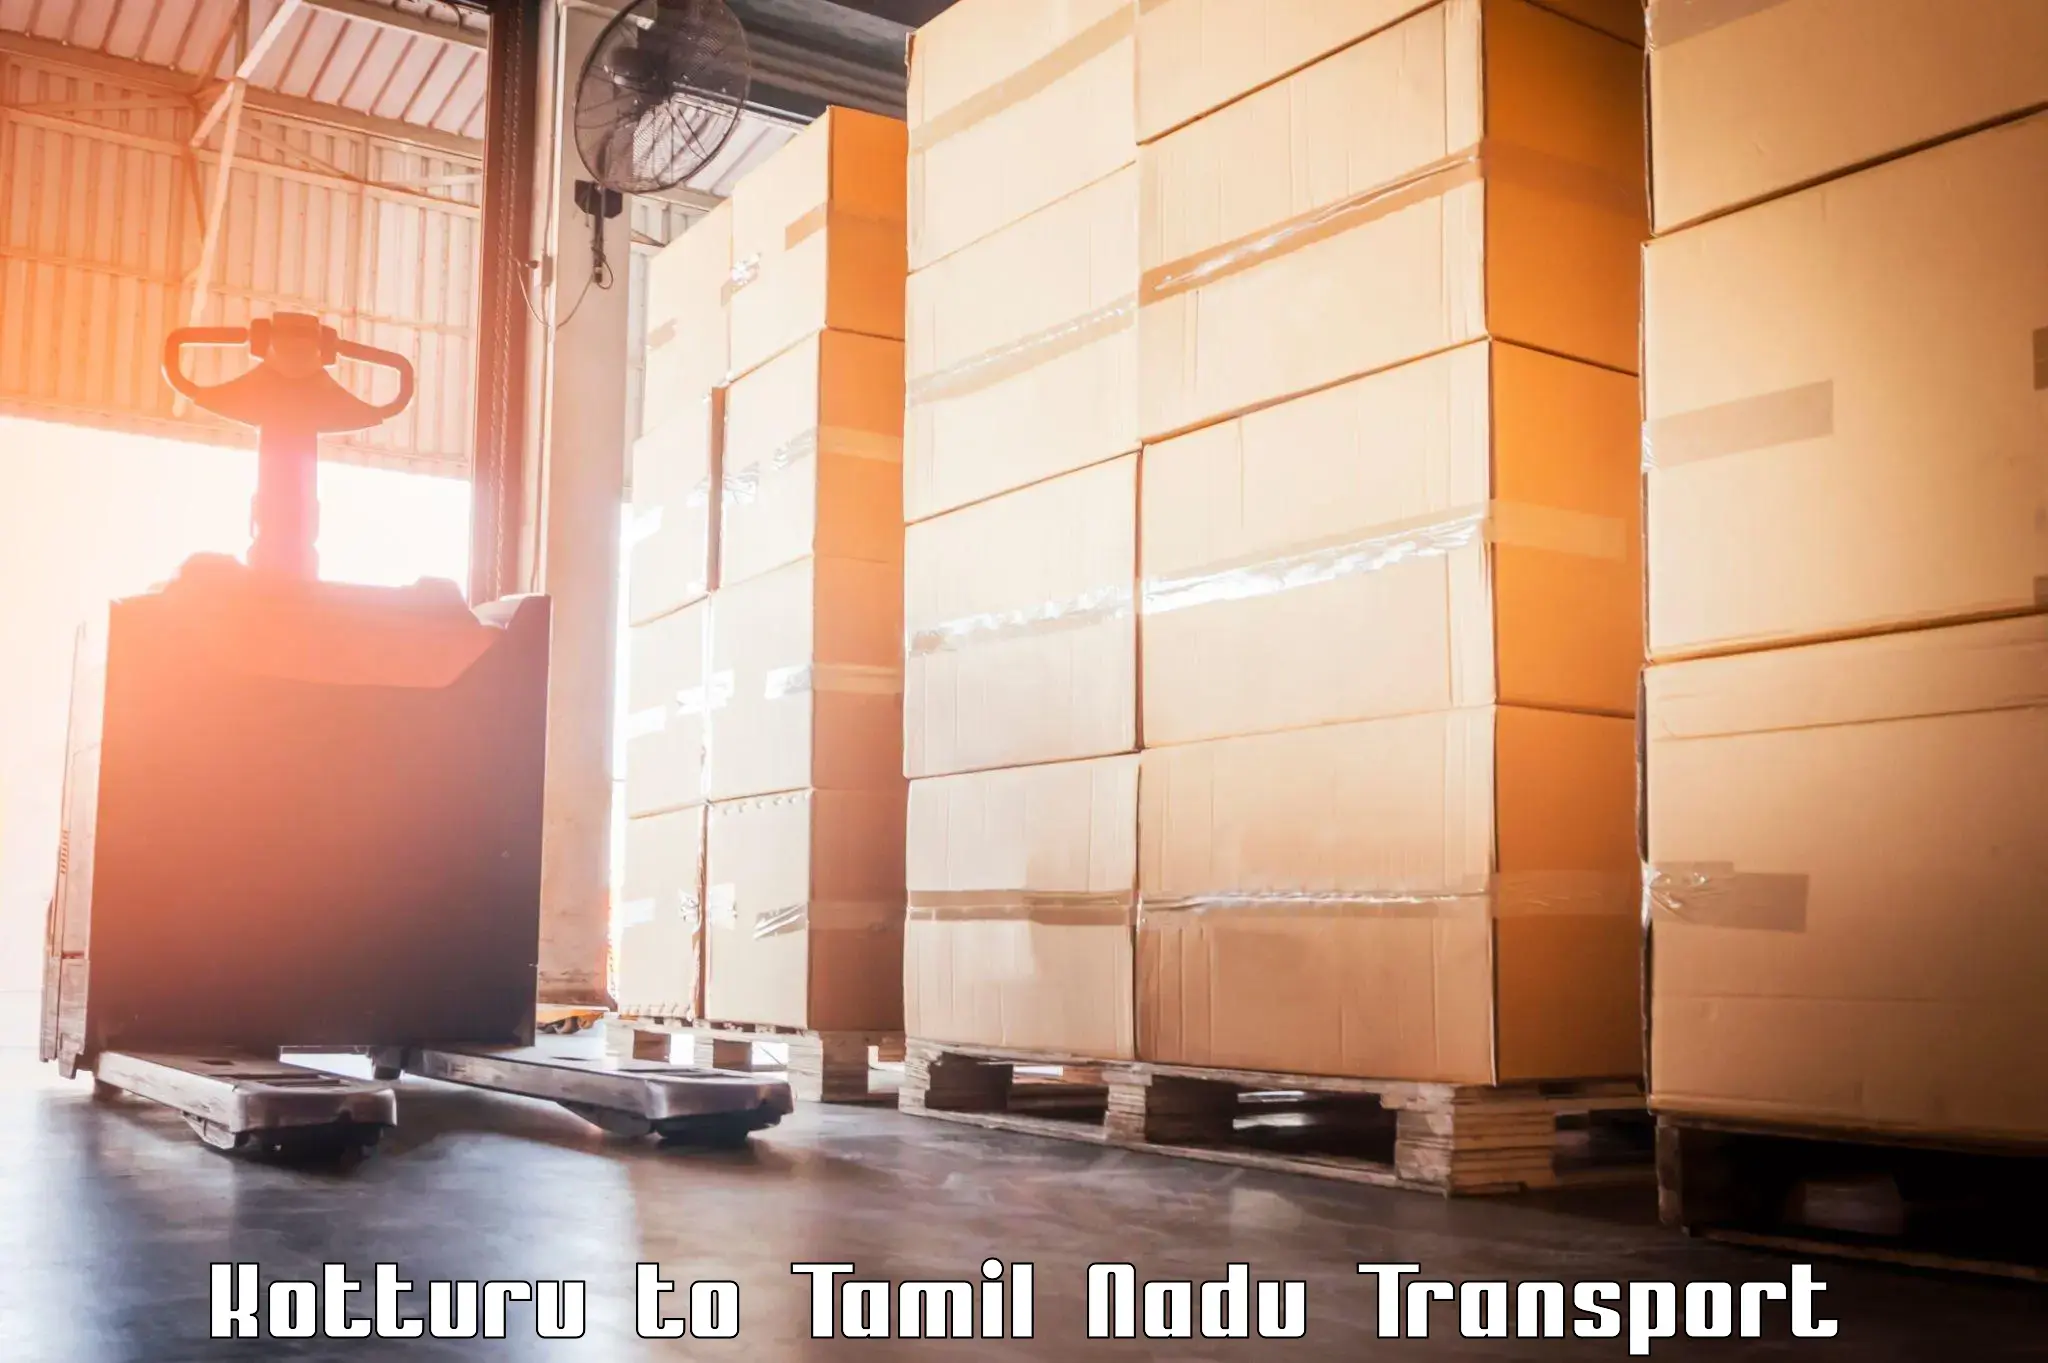 Container transportation services Kotturu to Manamadurai